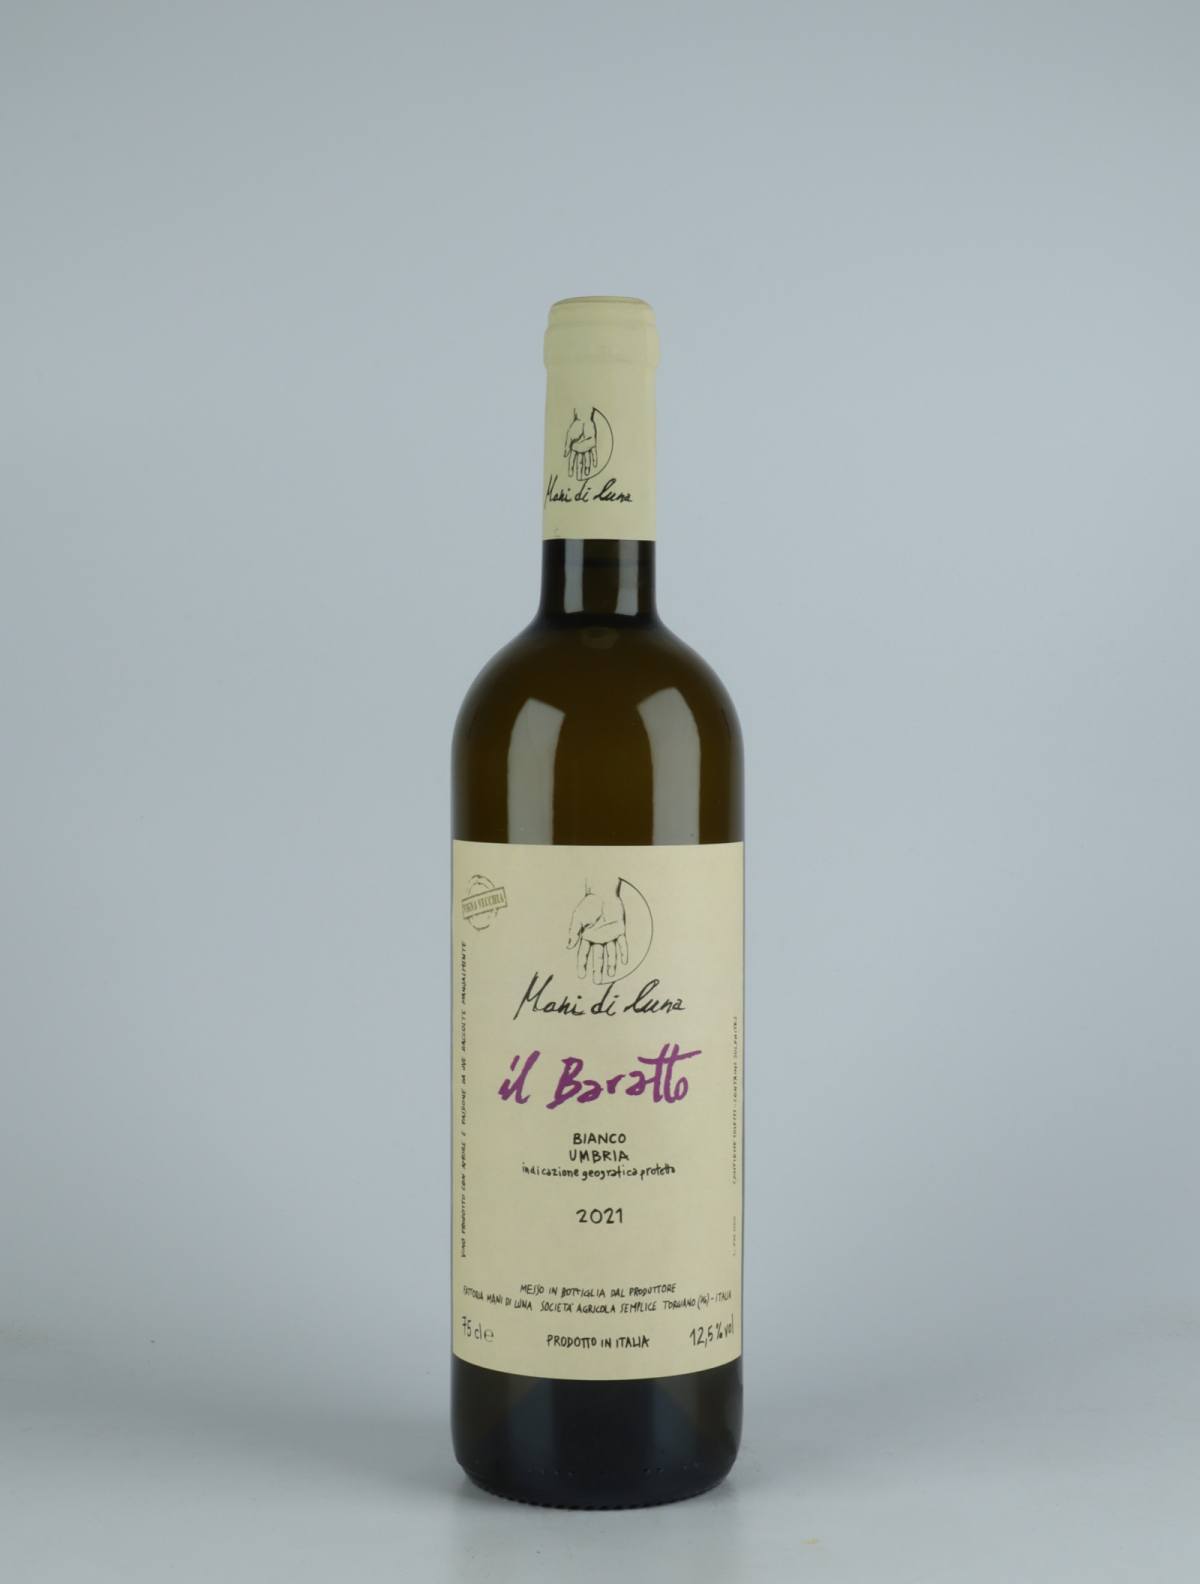 A bottle 2021 Il Baratto White wine from Mani di Luna, Umbria in Italy